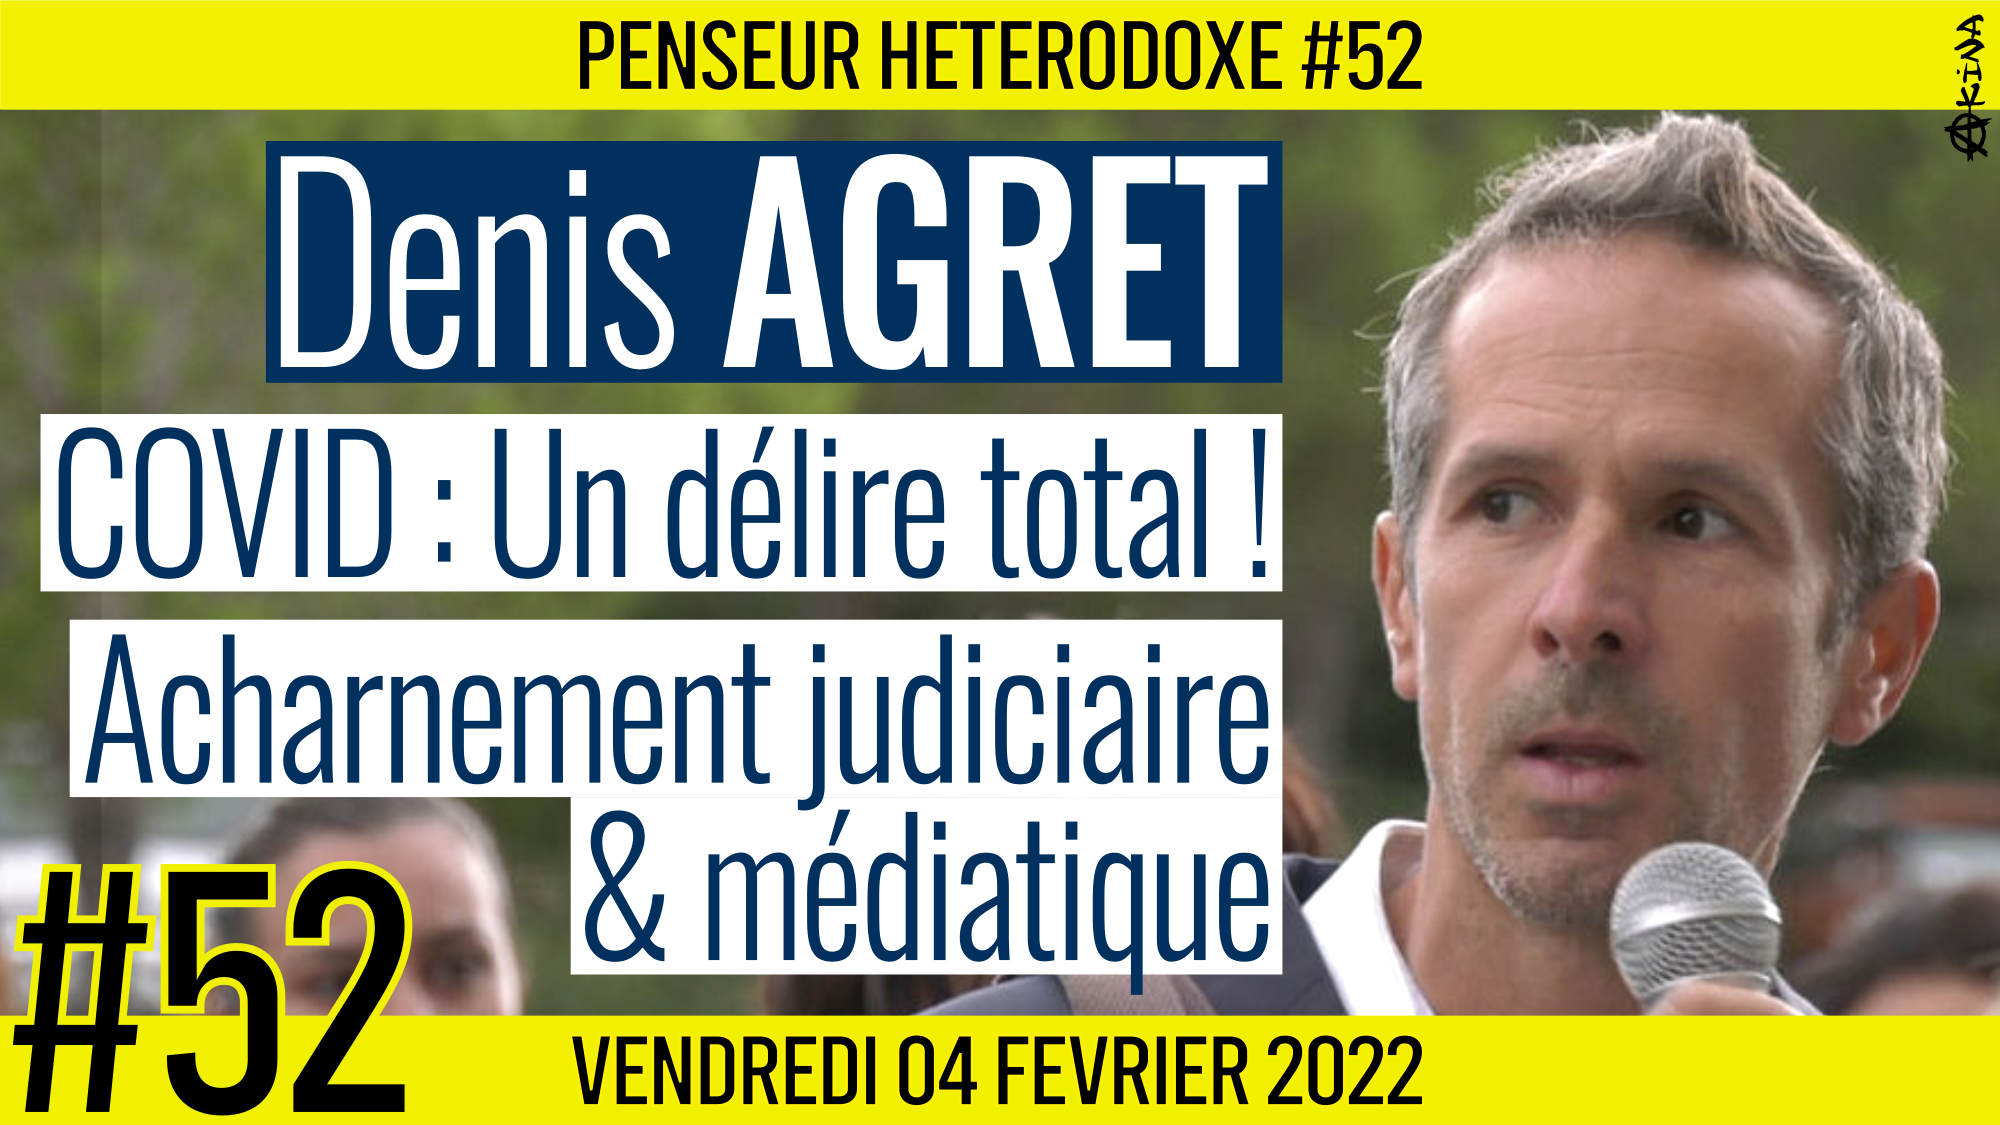 💡 PENSEUR HÉTÉRODOXE #52 🗣 Denis AGRET 🎯 COVID-19 : Un délire total ! 📆 04-02-2022